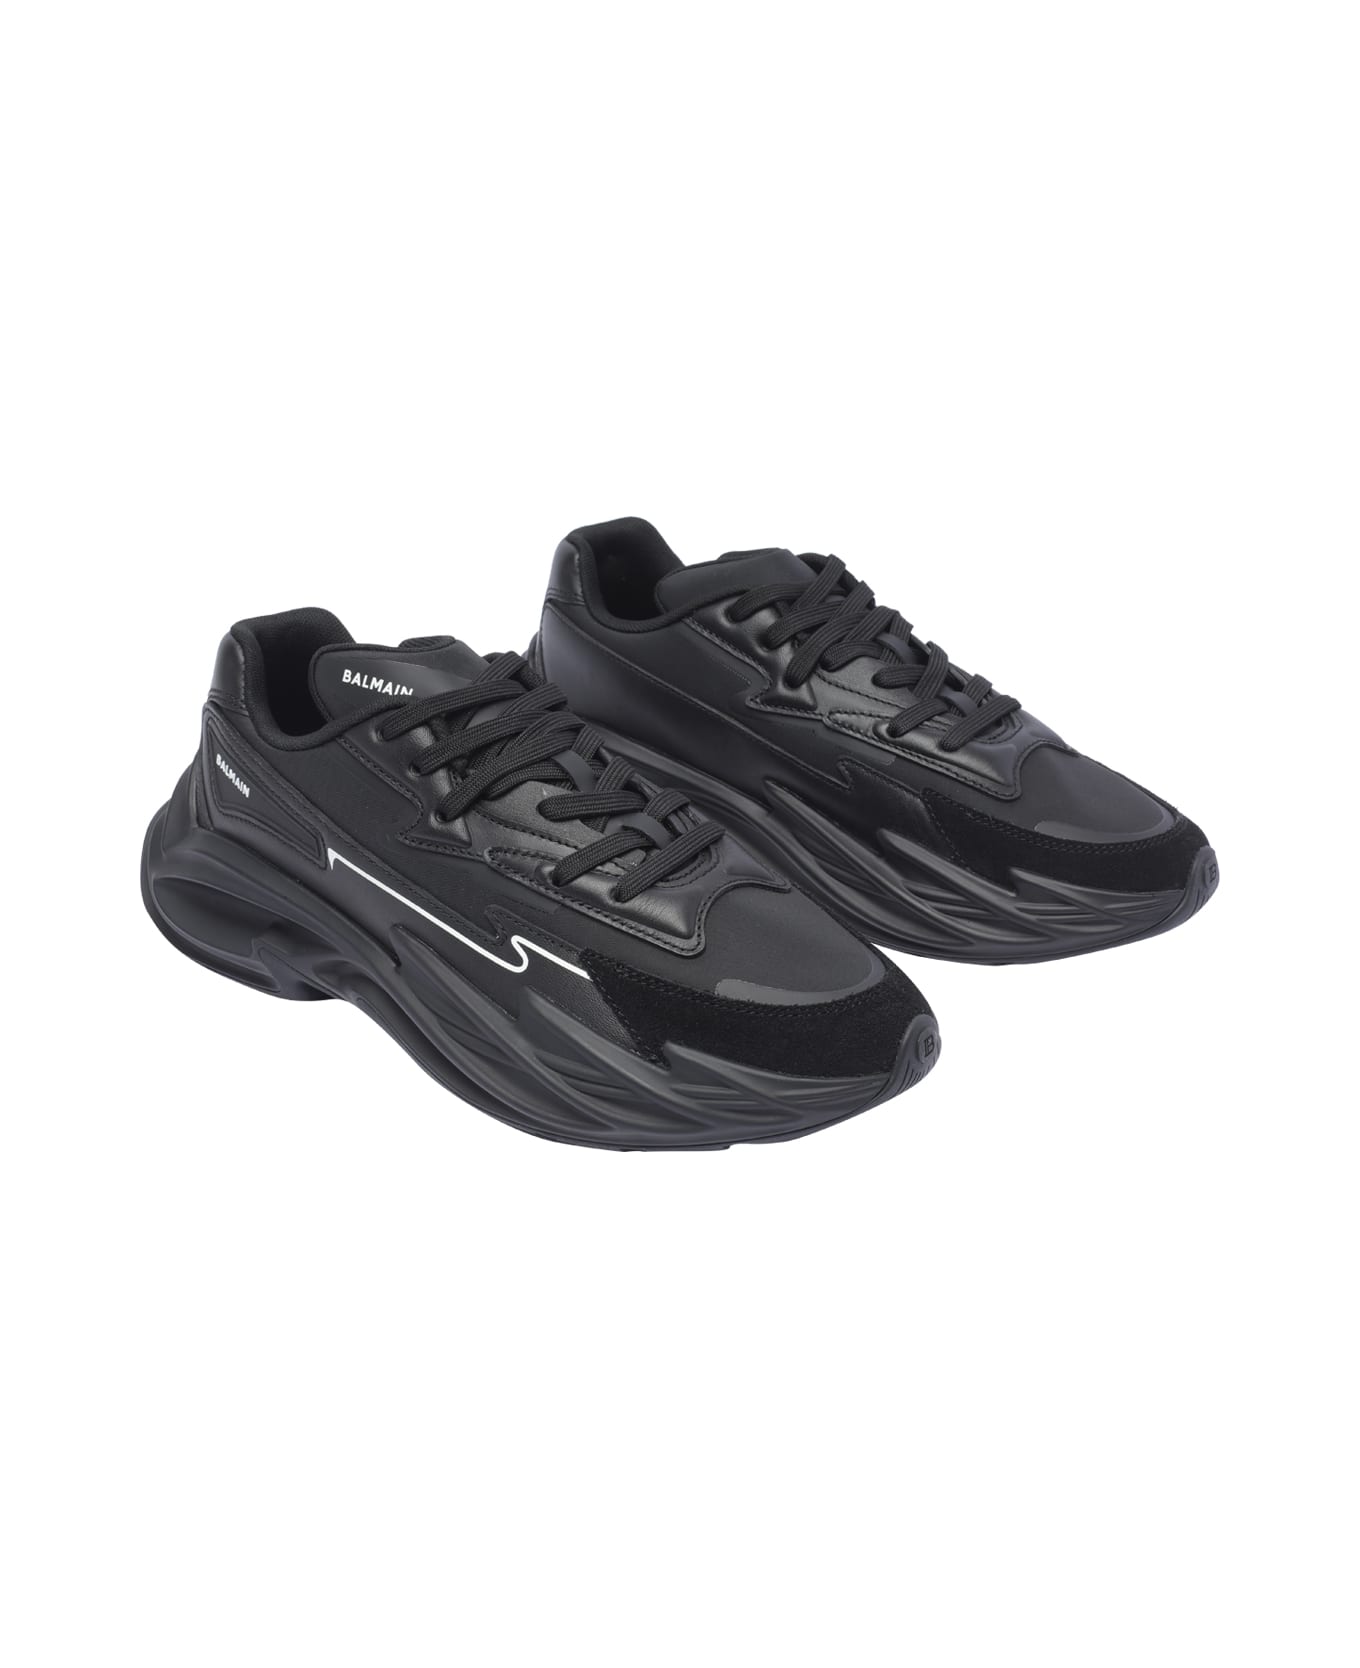 Balmain Run-low Sneakers - Black スニーカー